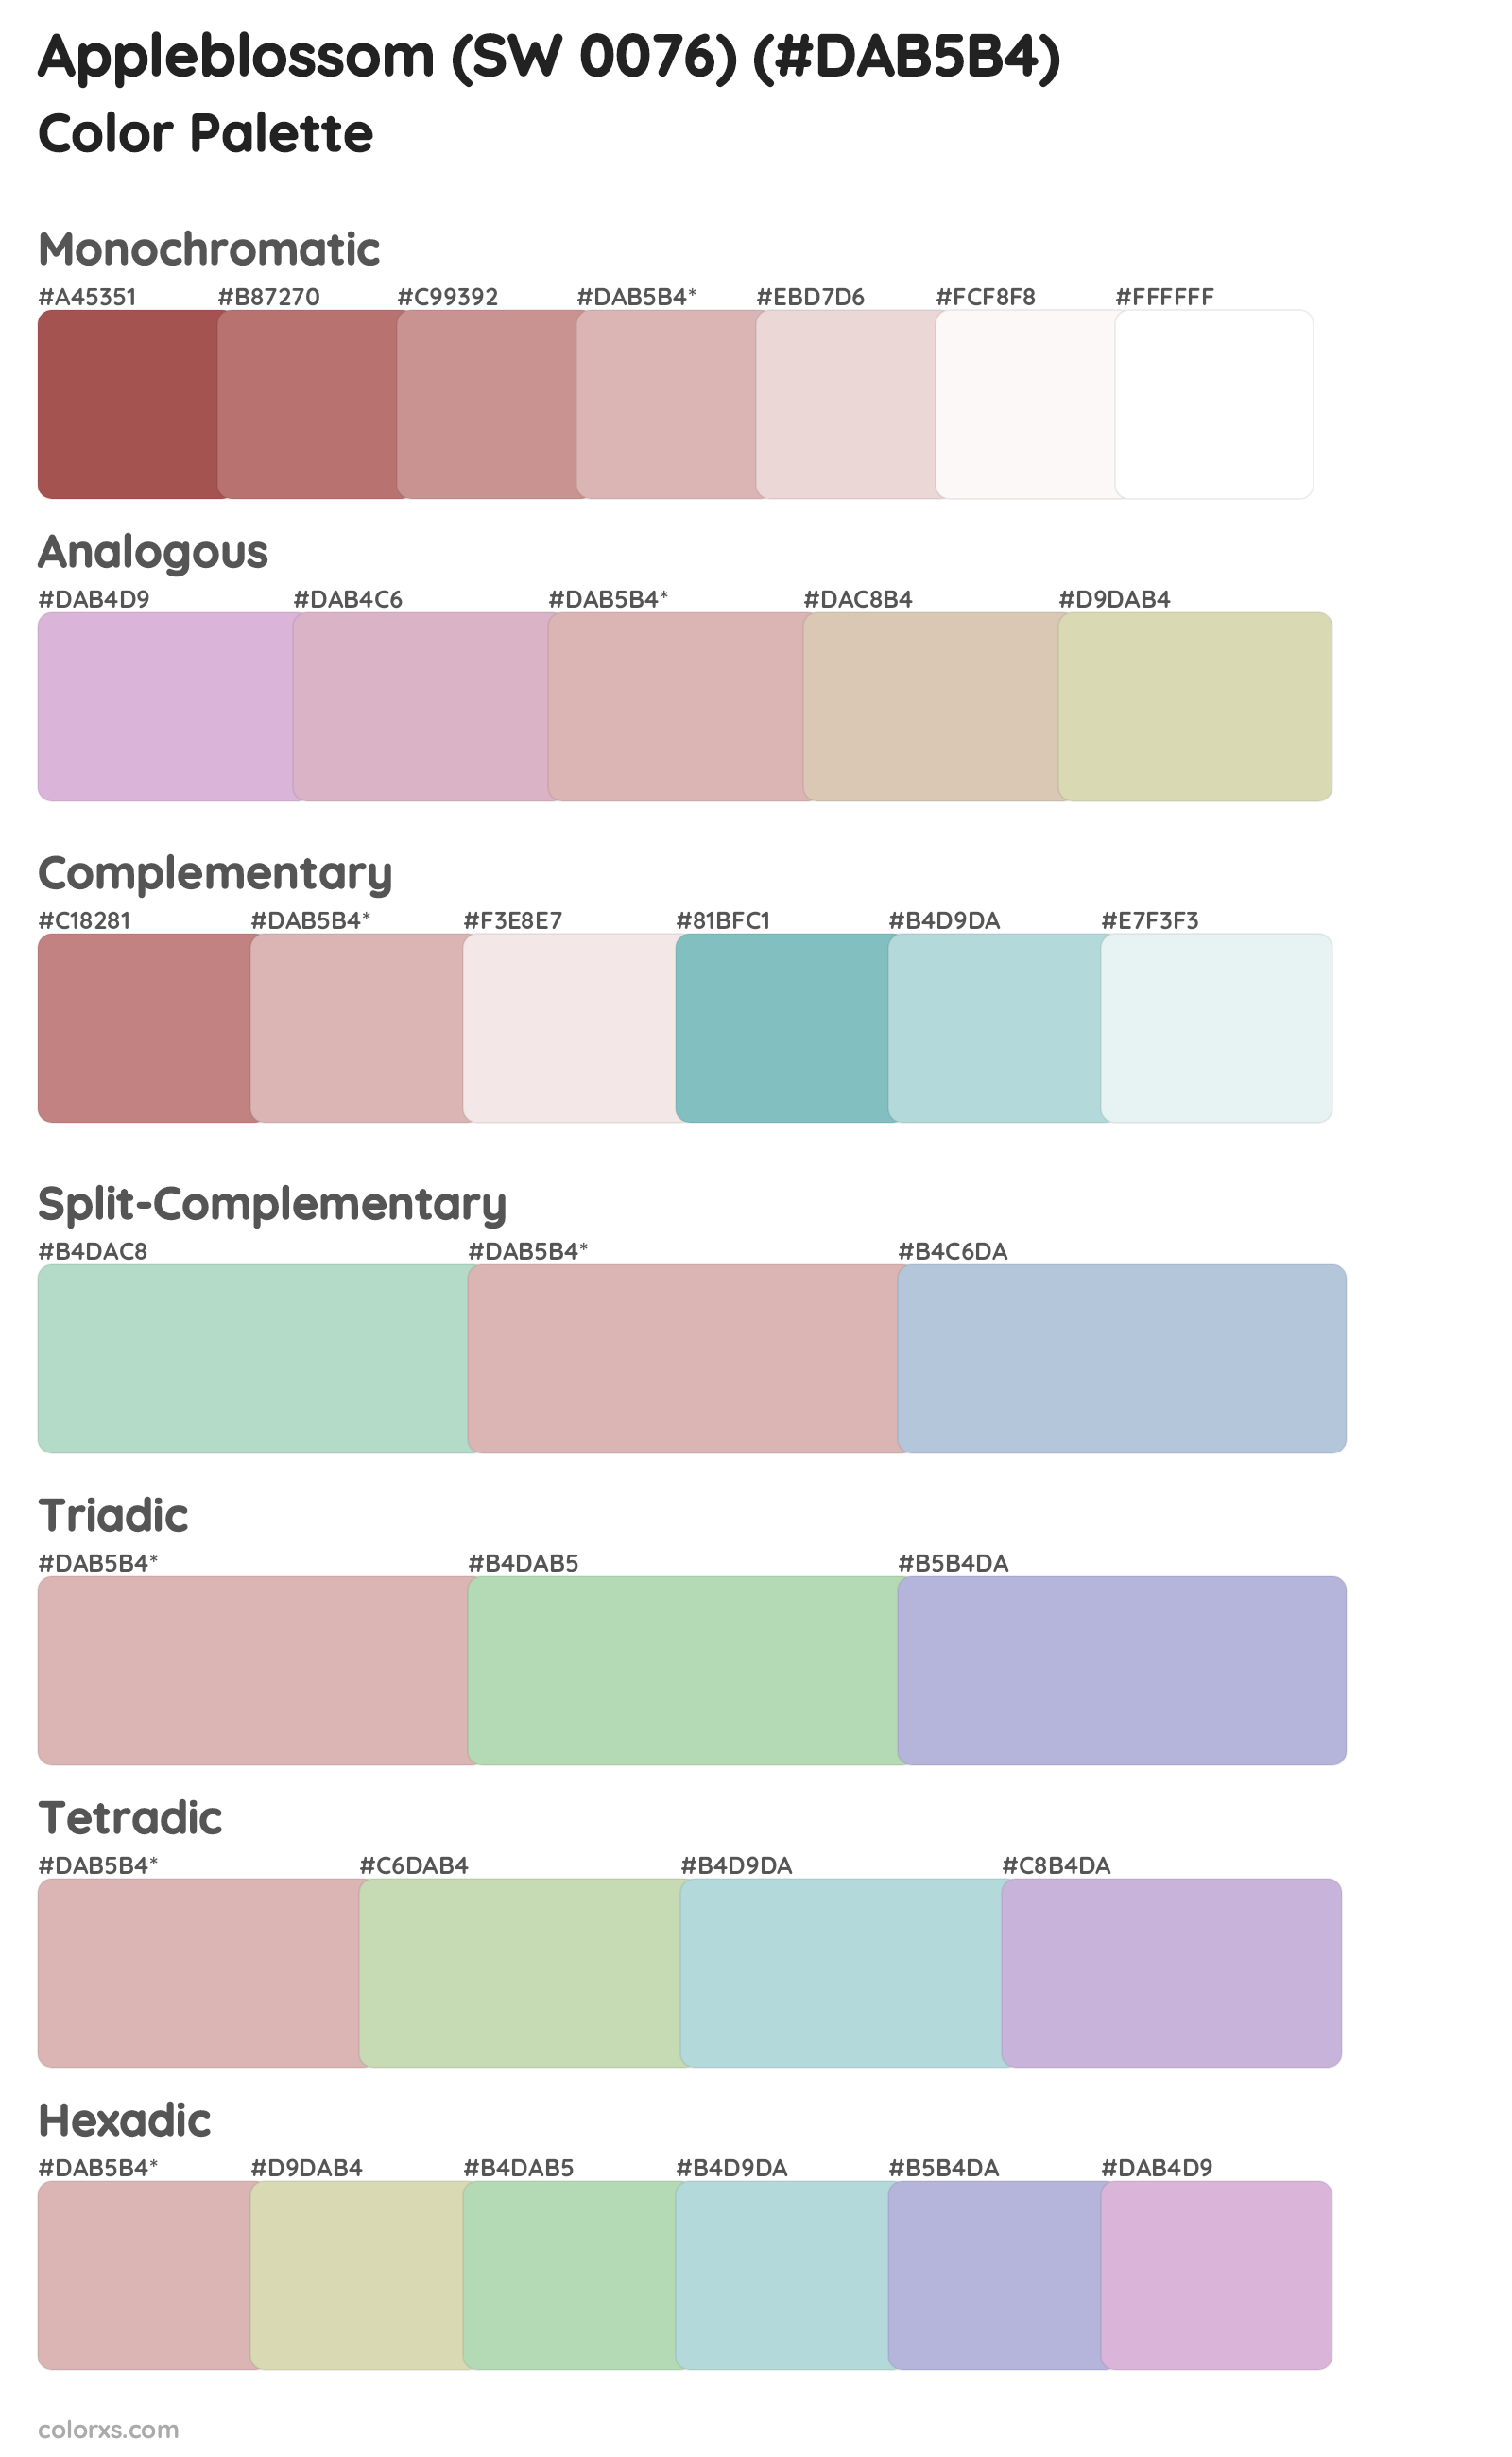 Appleblossom (SW 0076) Color Scheme Palettes